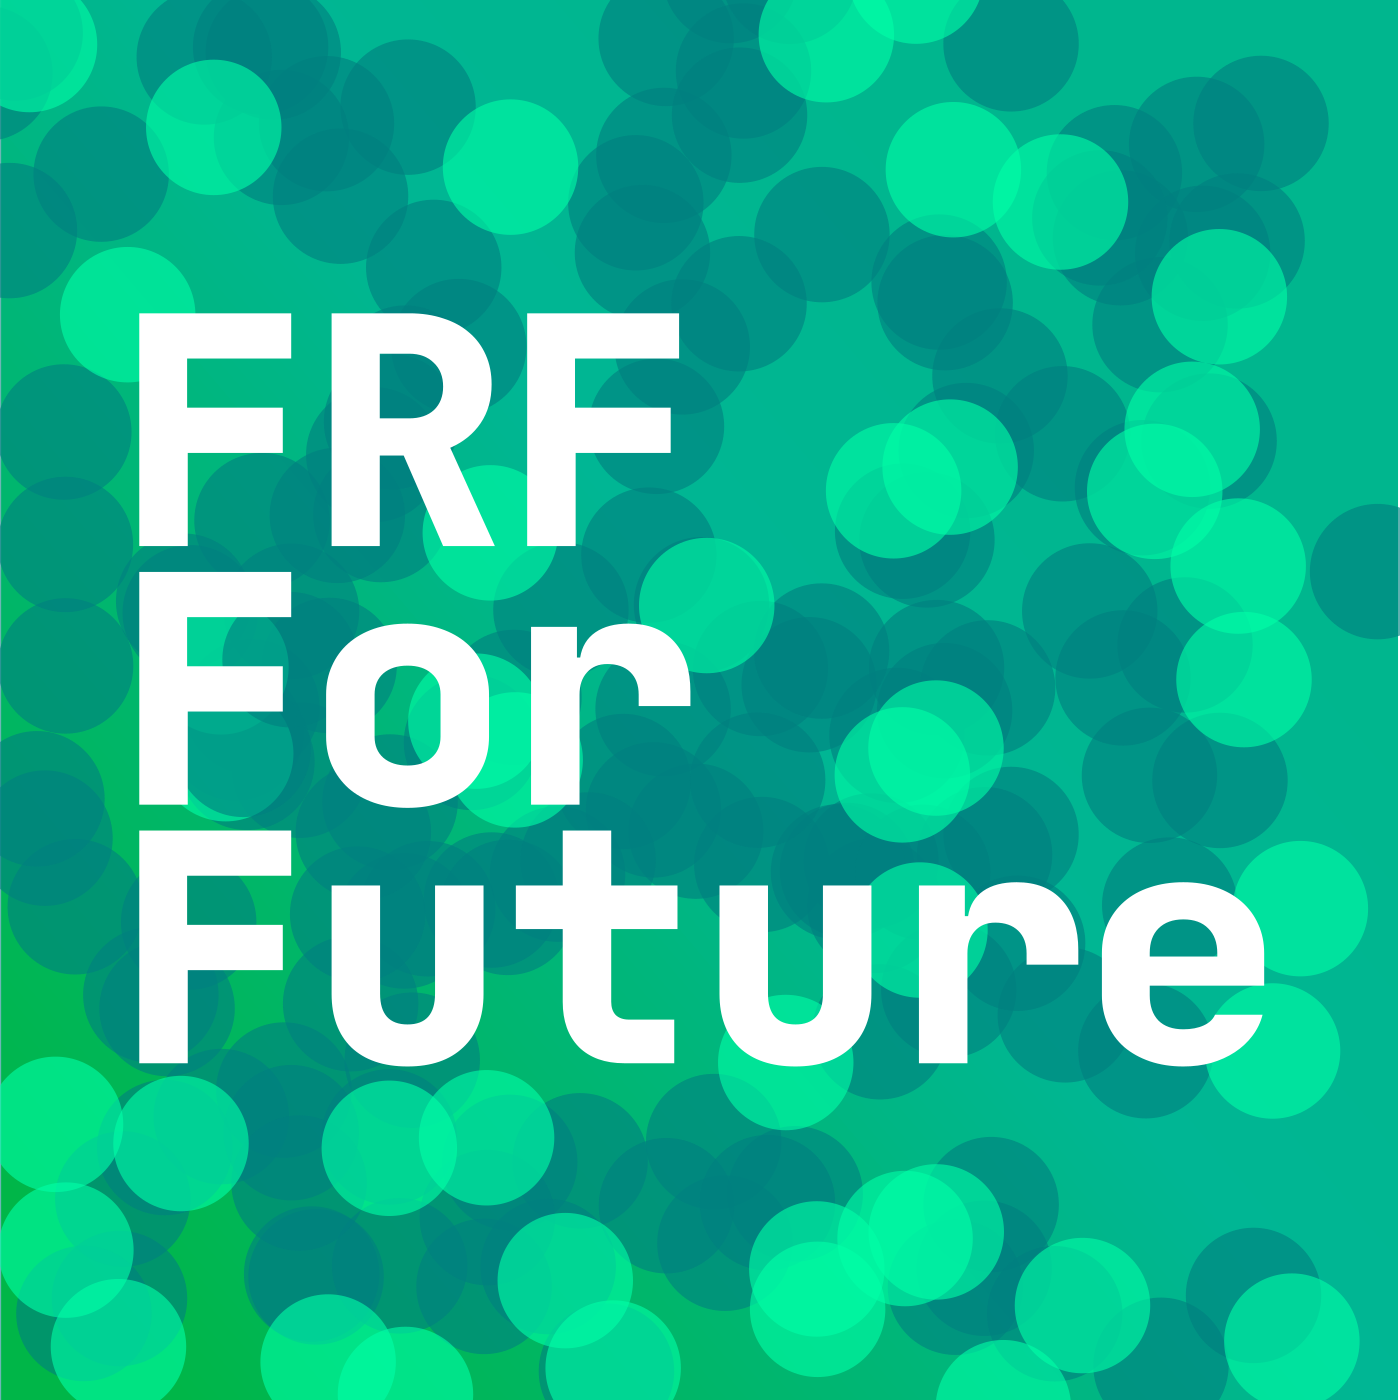 Freies Radio Freistadt for Future